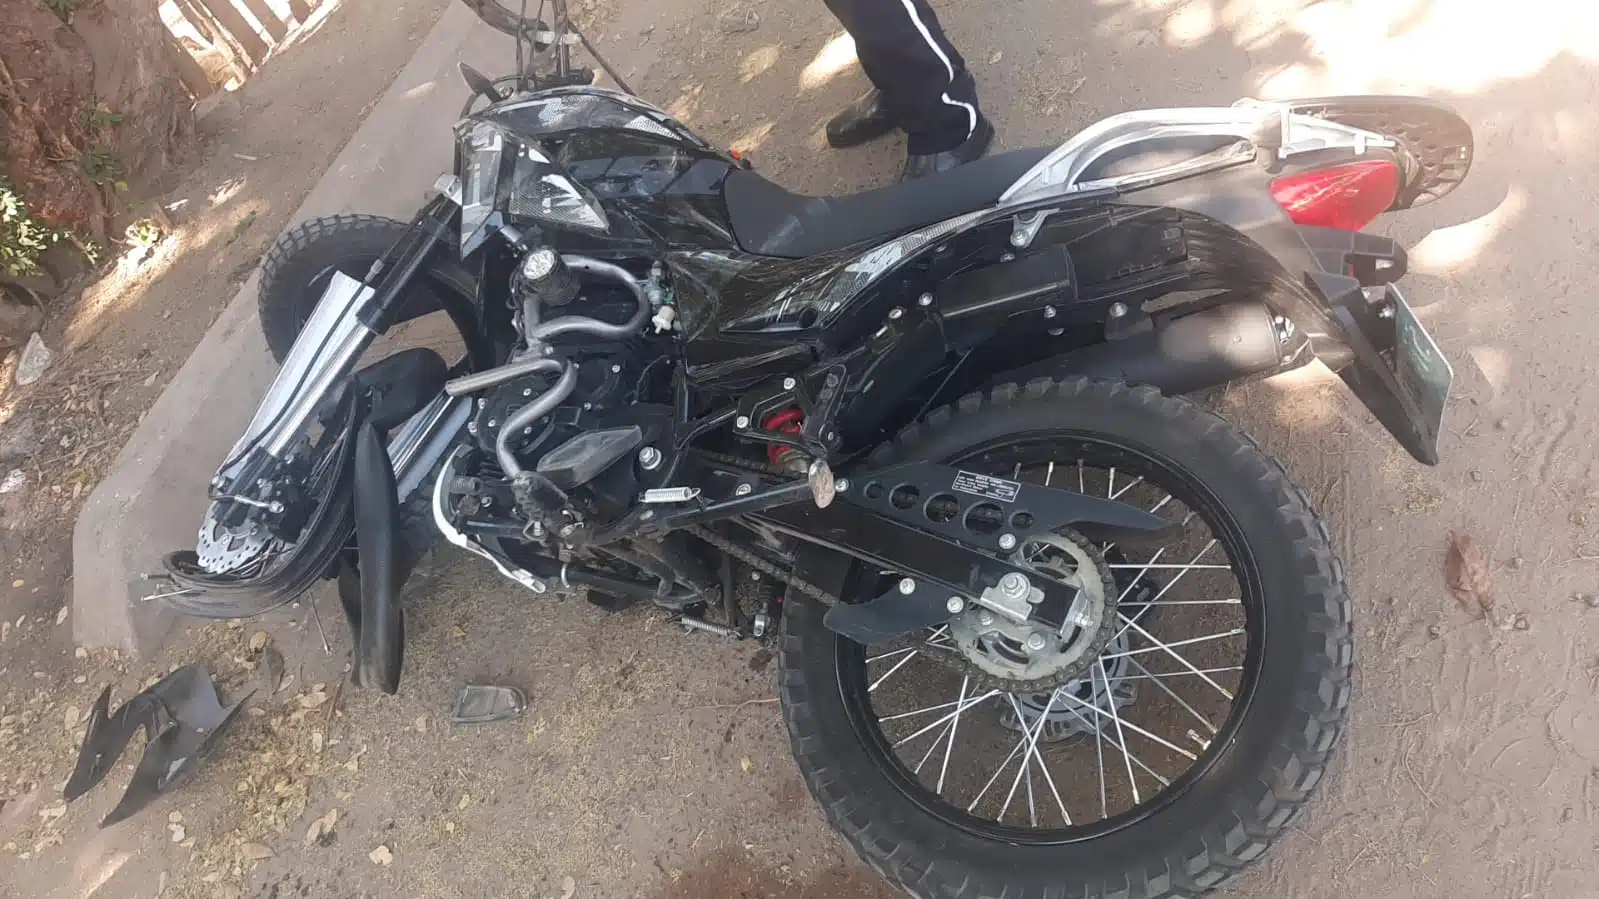 Motocicleta Itlaika, color negro, tirada en calle de tierra en Guasave tras accidente